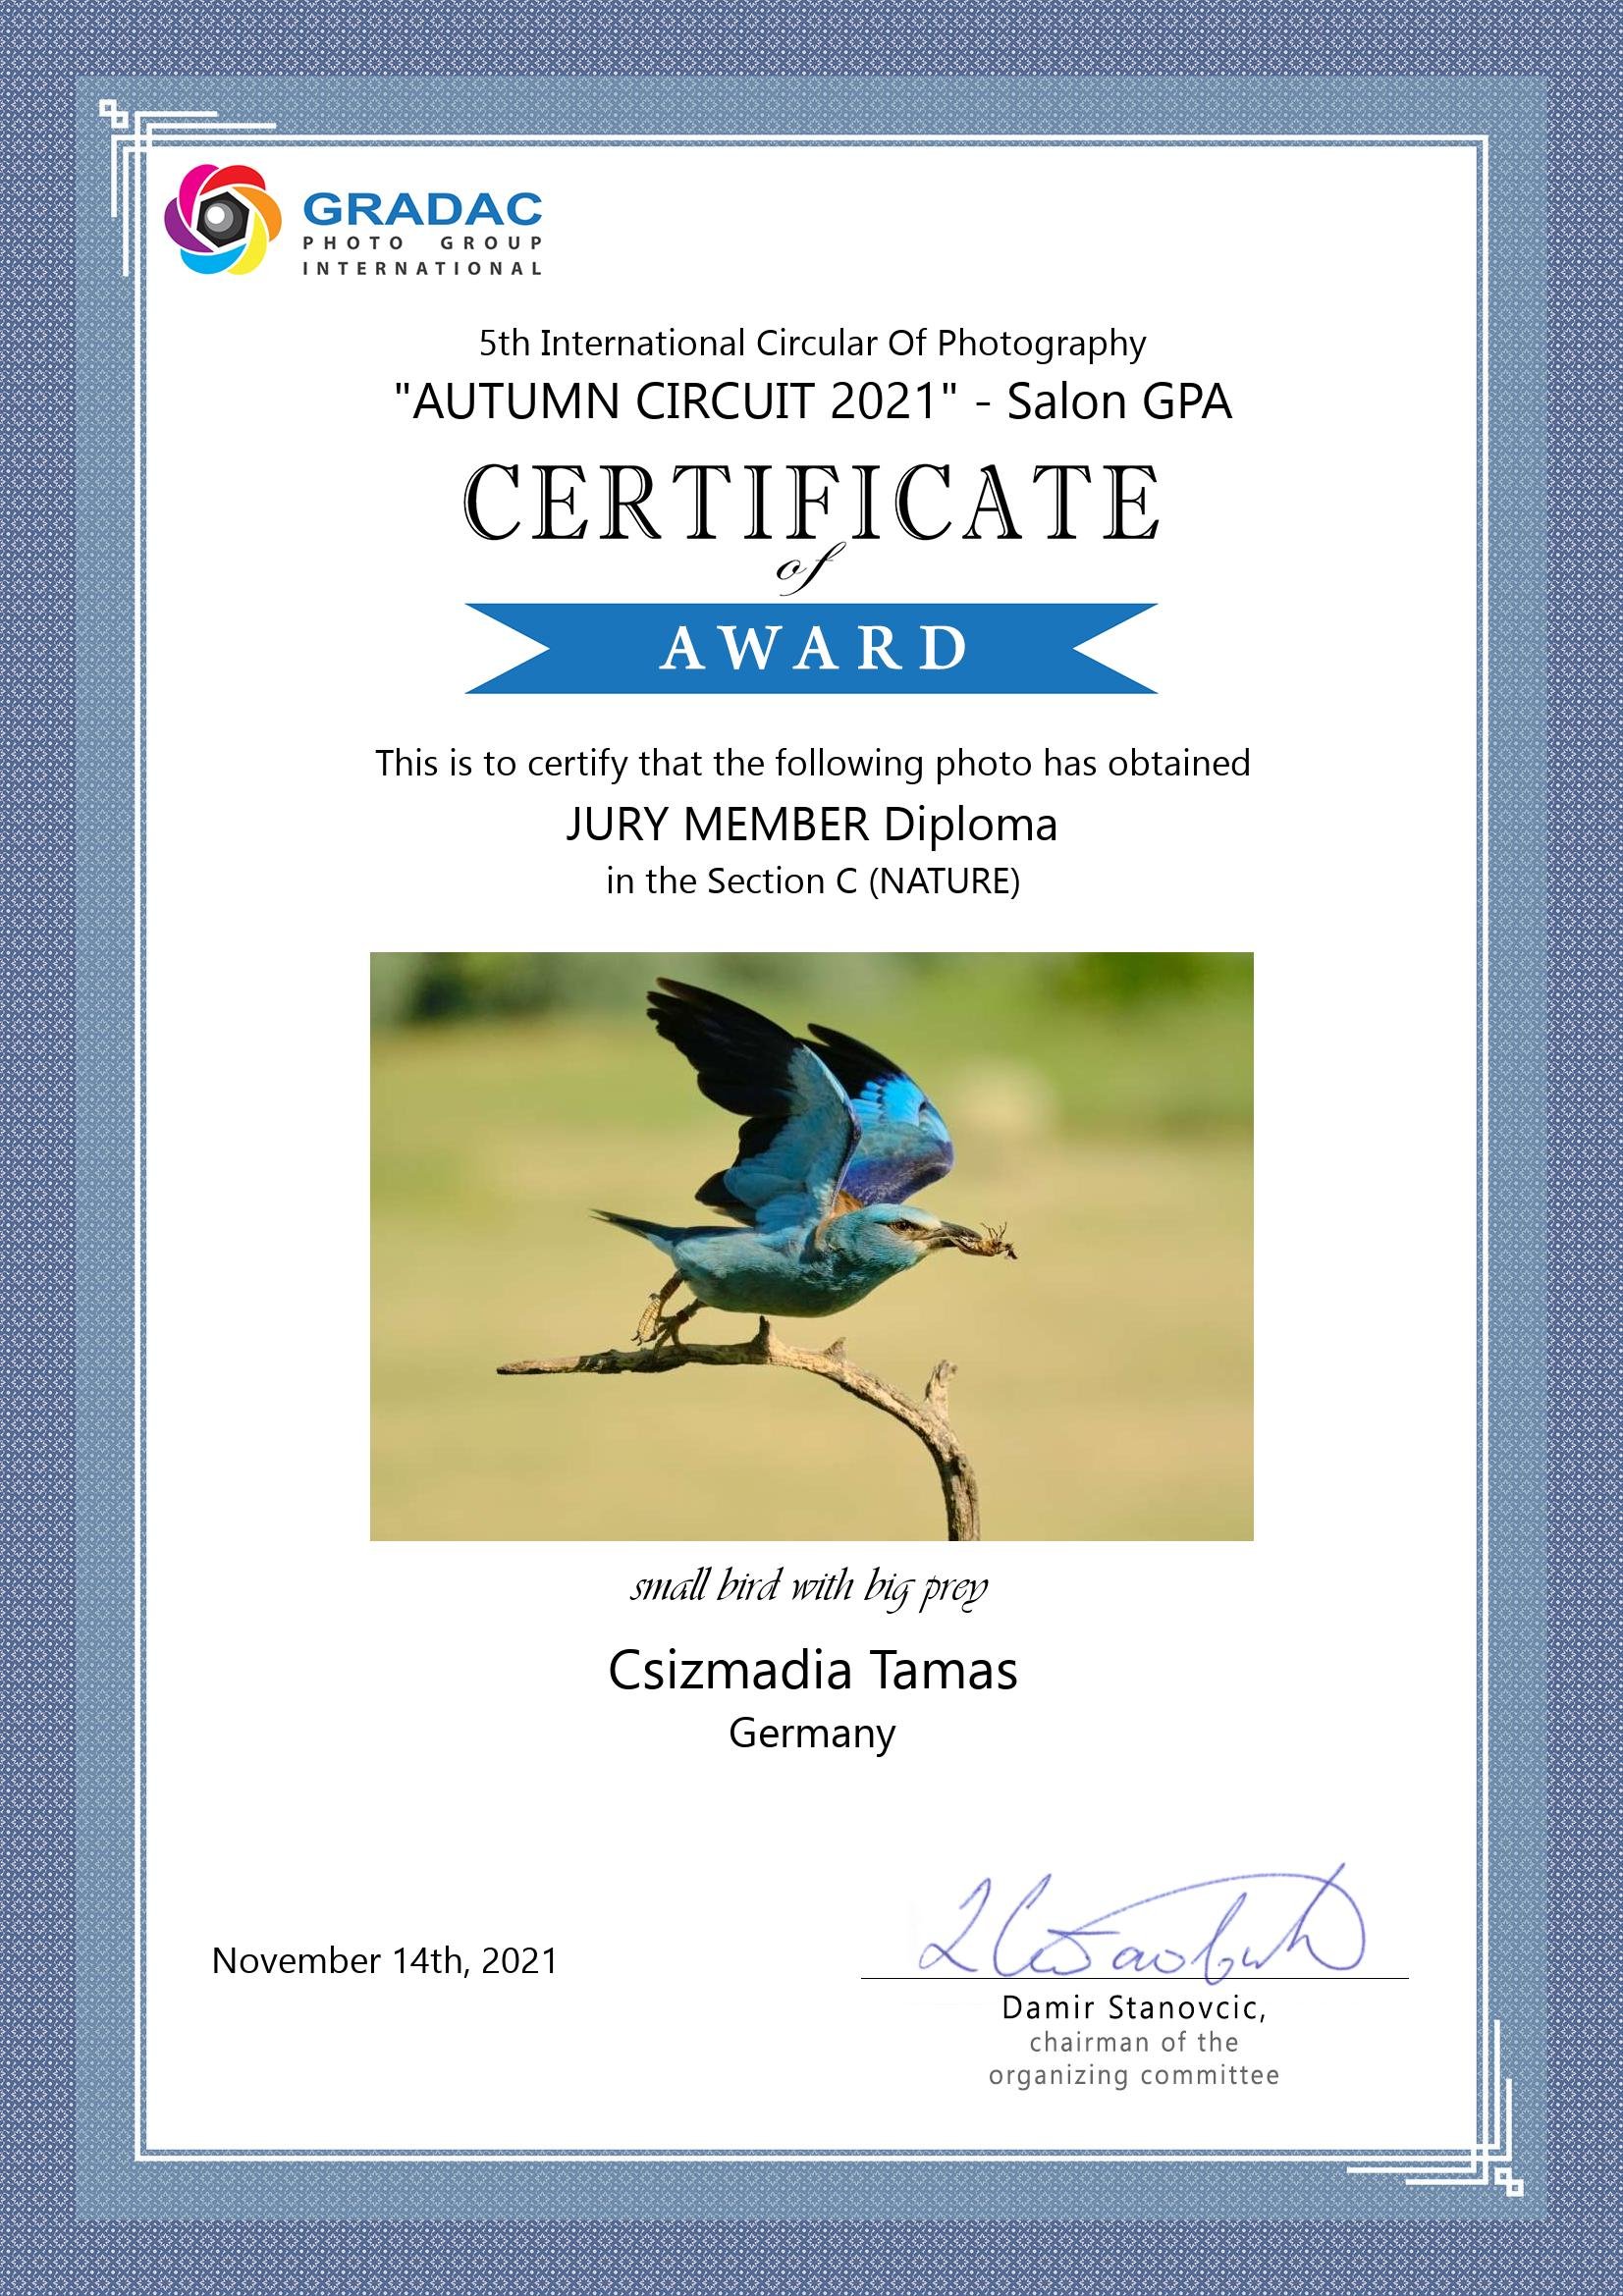 Jury member diploma: Csizmadia Tamás - Small bird with big prey